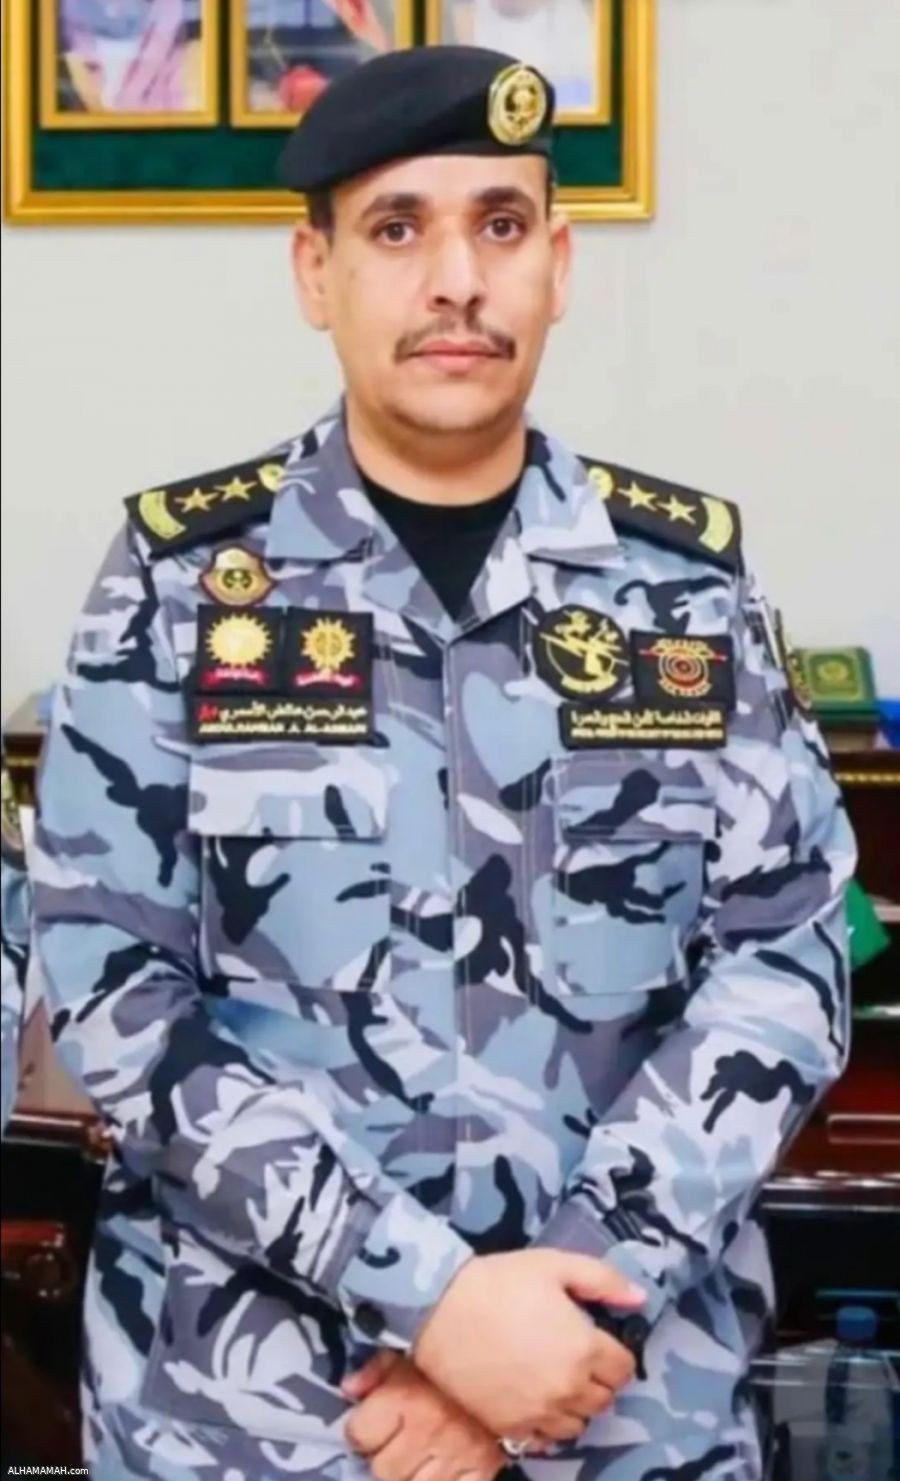 ترقية | عبدالرحمن بن عائض بن عكشان إلى رتبة عقيد بالقوات الخاصة بأمن الحج والعمرة